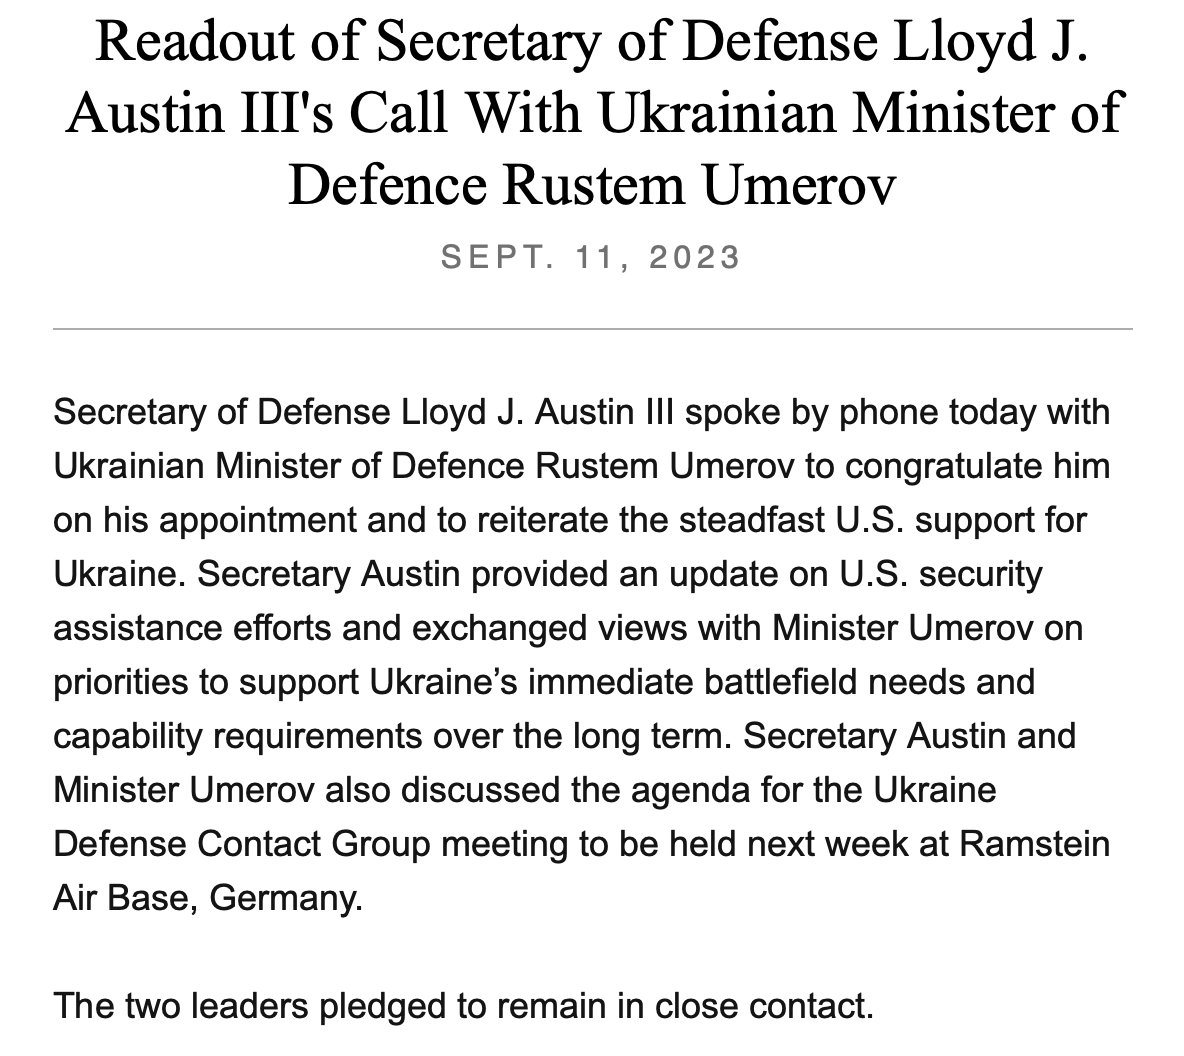 El @SecDef de EE. UU. Lloyd Austin habló el lunes con el nuevo ministro de Defensa de Ucrania, Rustem Umerov, según @DeptofDefense. El llamado era para reiterar el firme apoyo de Estados Unidos a Ucrania y también informar a Umerov sobre la asistencia de Estados Unidos.